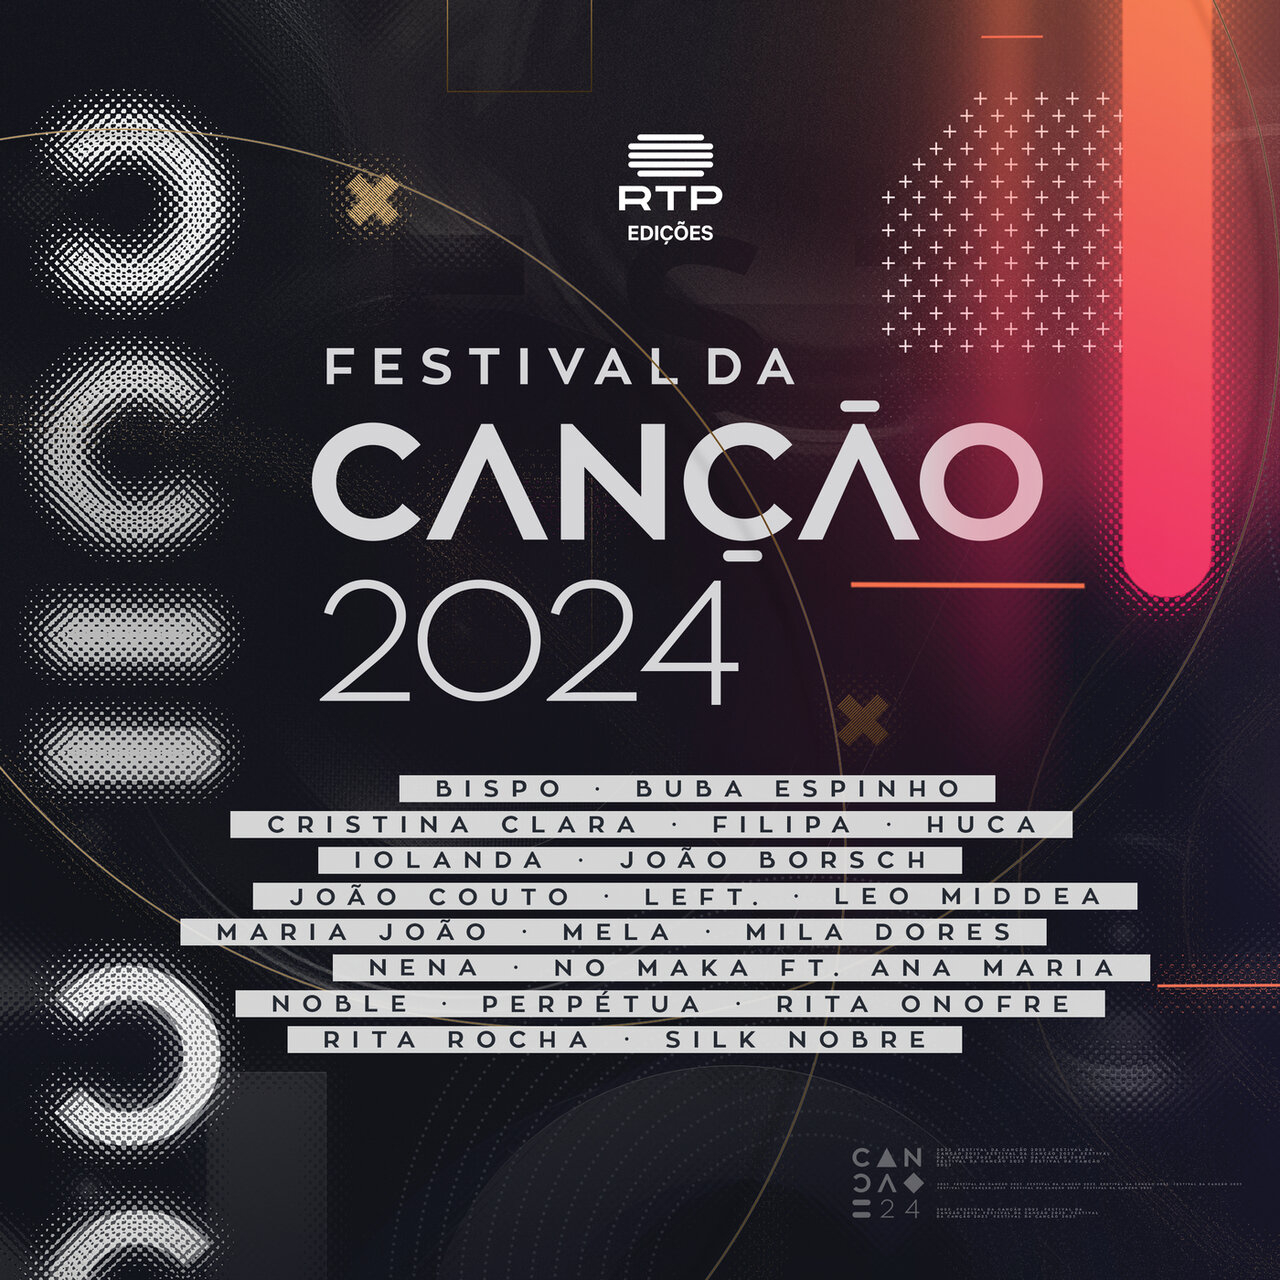 Huca — Pé de choro cover artwork